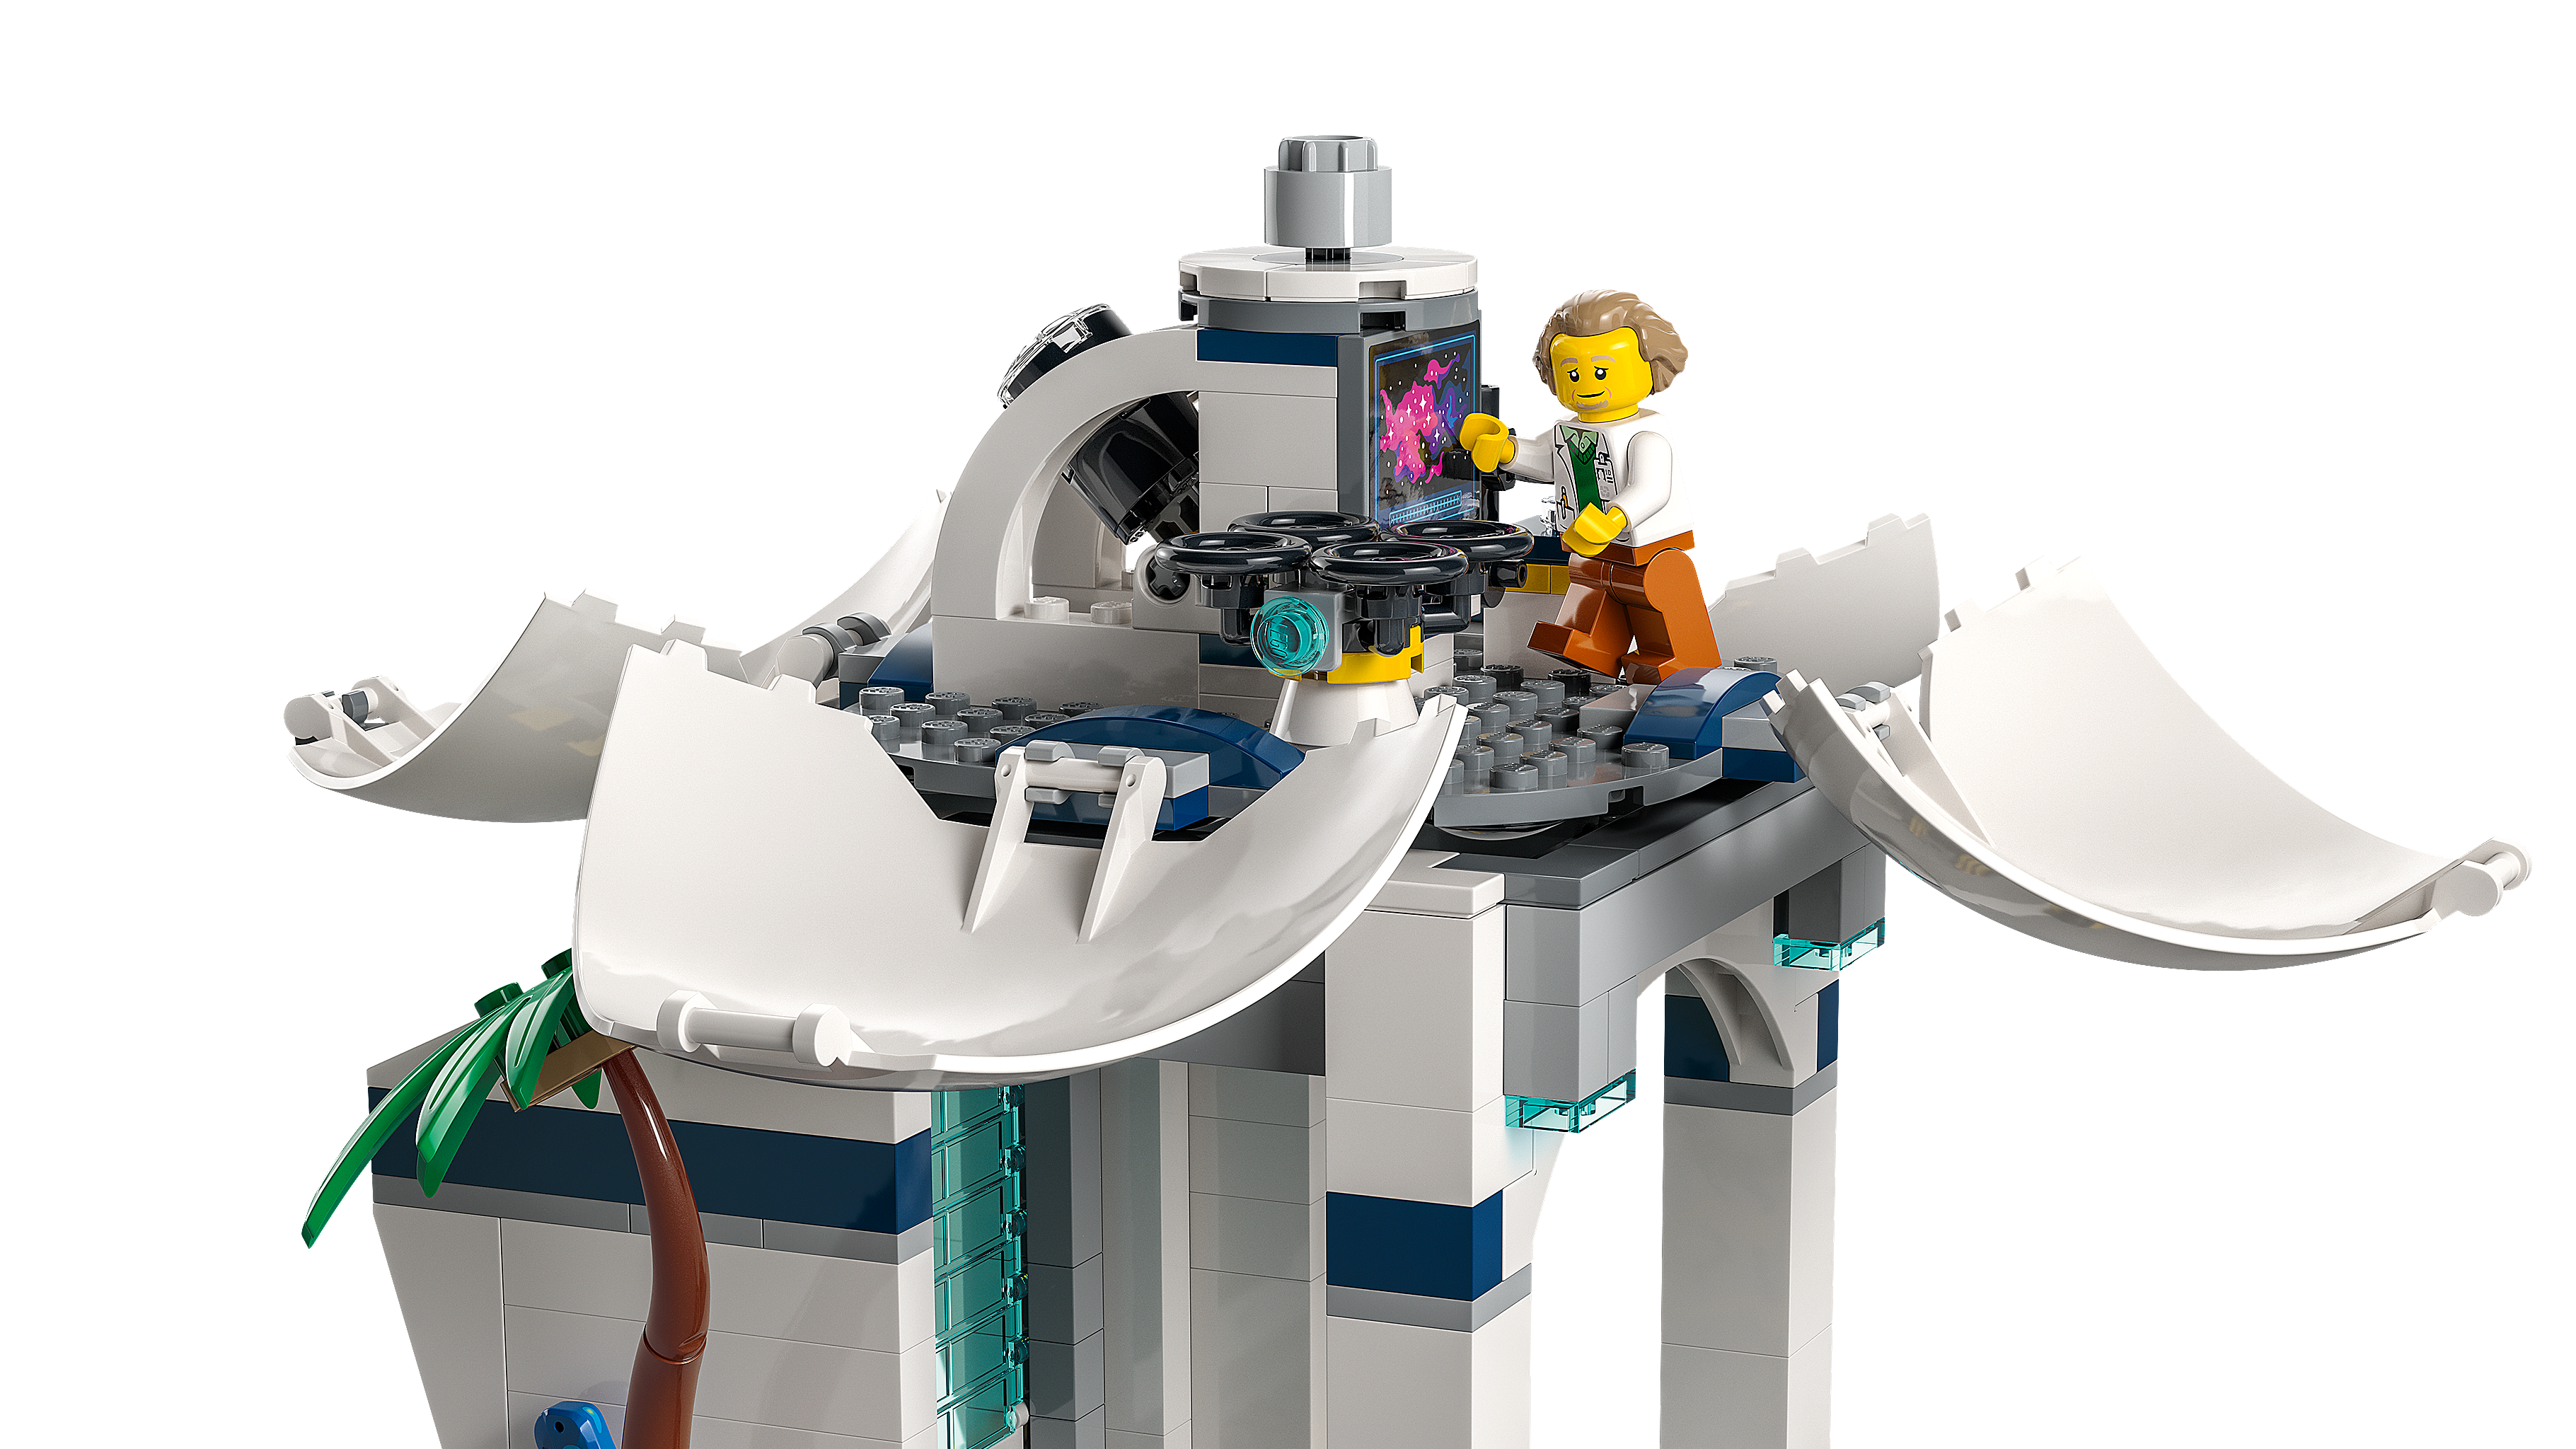 ロケット打ち上げセンター 60351 - レゴ®シティ セット - LEGO.comキッズ